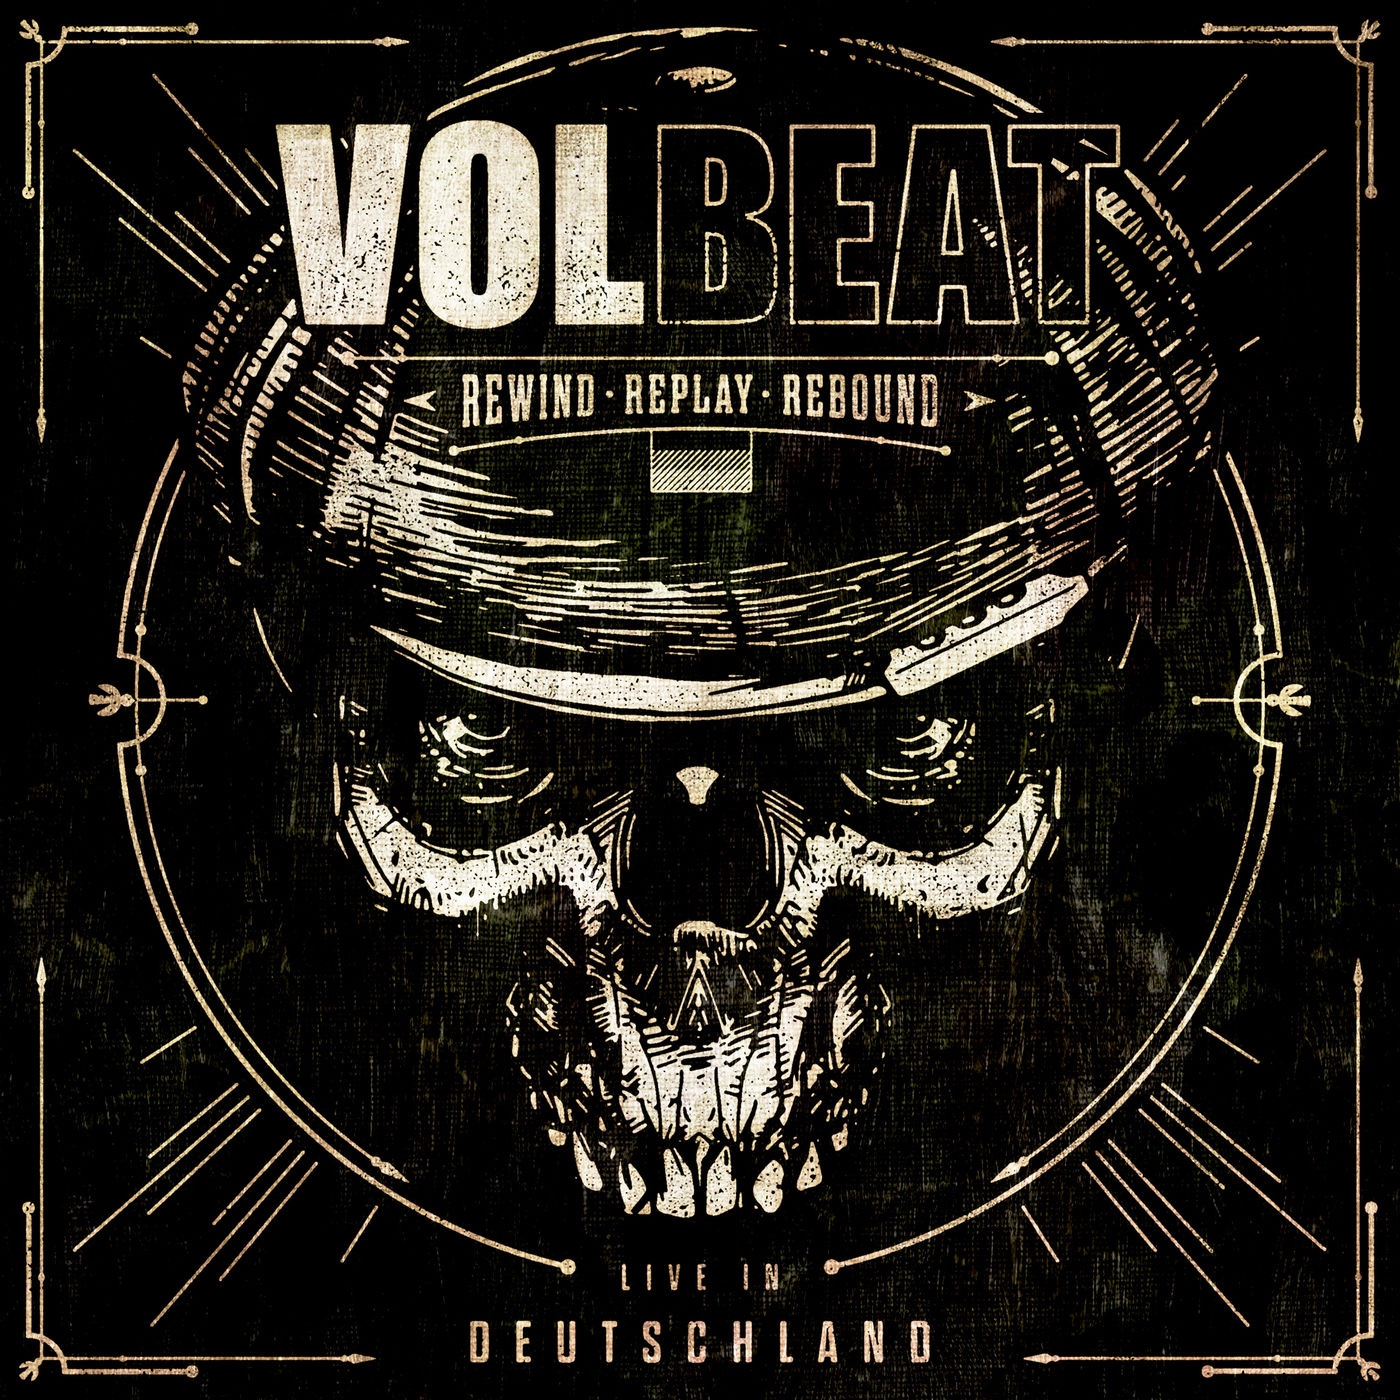 Volbeat – Rewind, Replay, Rebound (Live in Deutschland) (2020) [FLAC 24bit/44,1kHz]